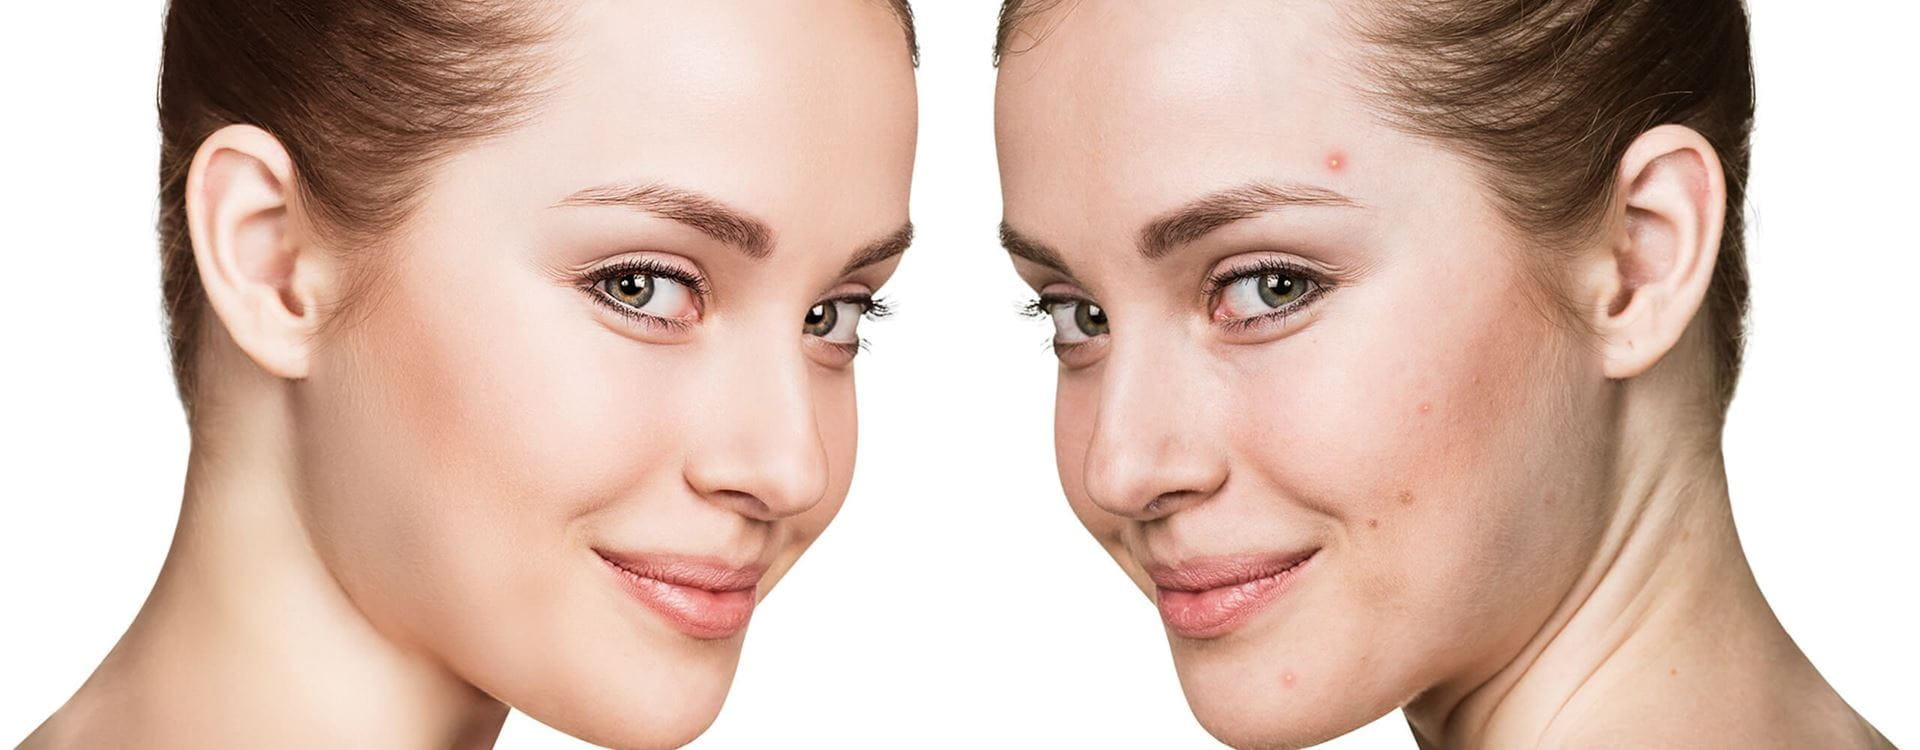  ¿Cómo se originan y cómo se eliminan las manchas de acné?